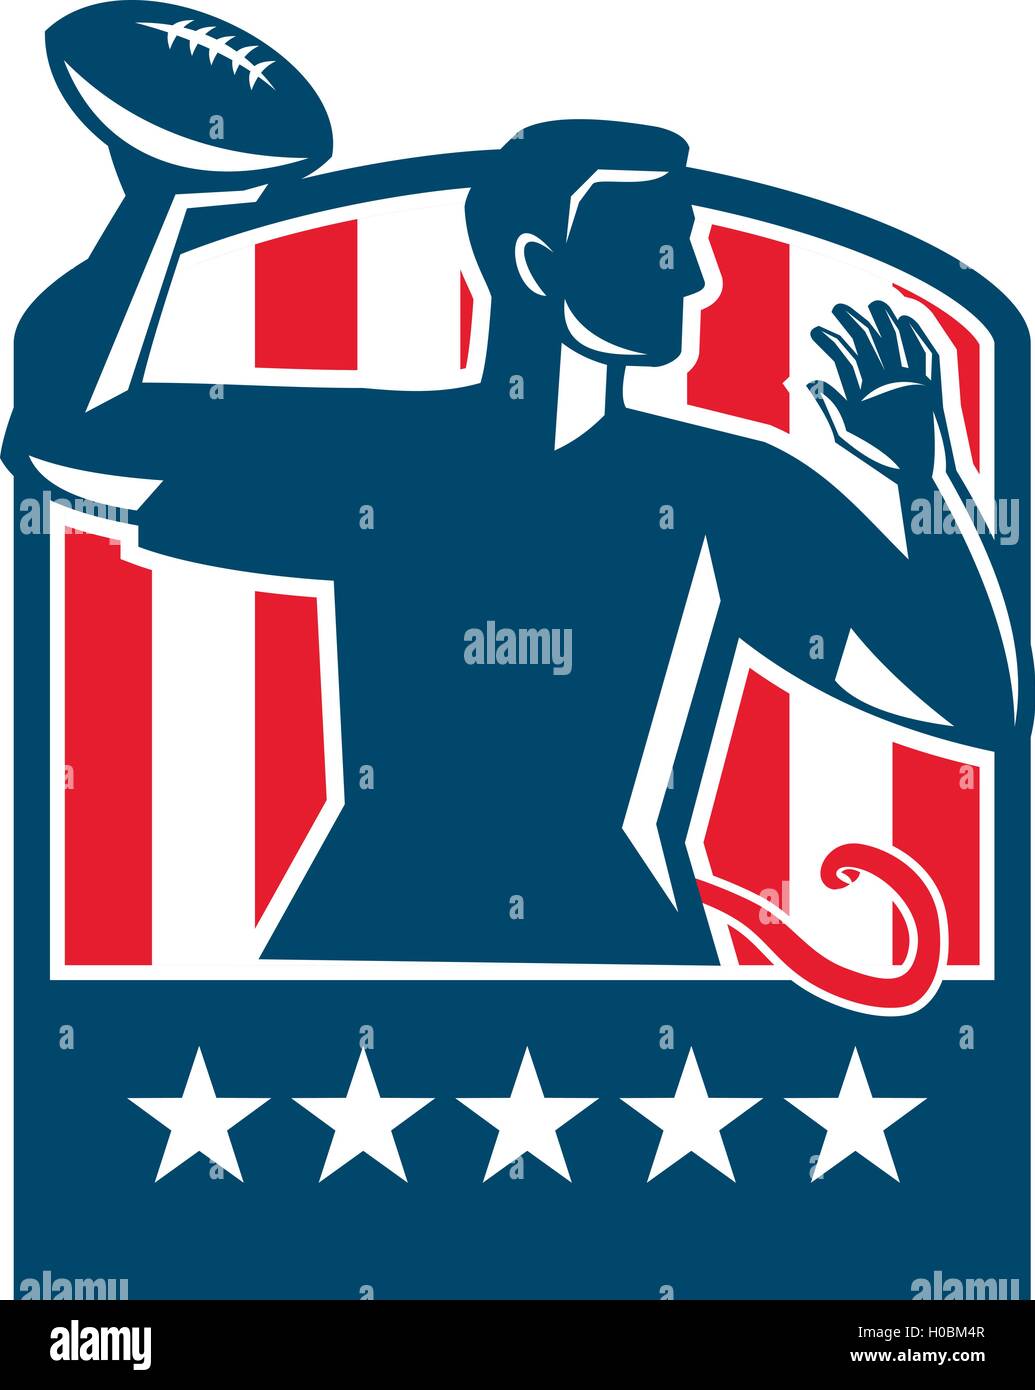 Abbildung einer Flagge Fußball Spieler QB vorbeifahrenden Kugel von der  Seite im Inneren Schild Wappen mit amerikanischen Stars Usa gesehen und  Stock-Vektorgrafik - Alamy